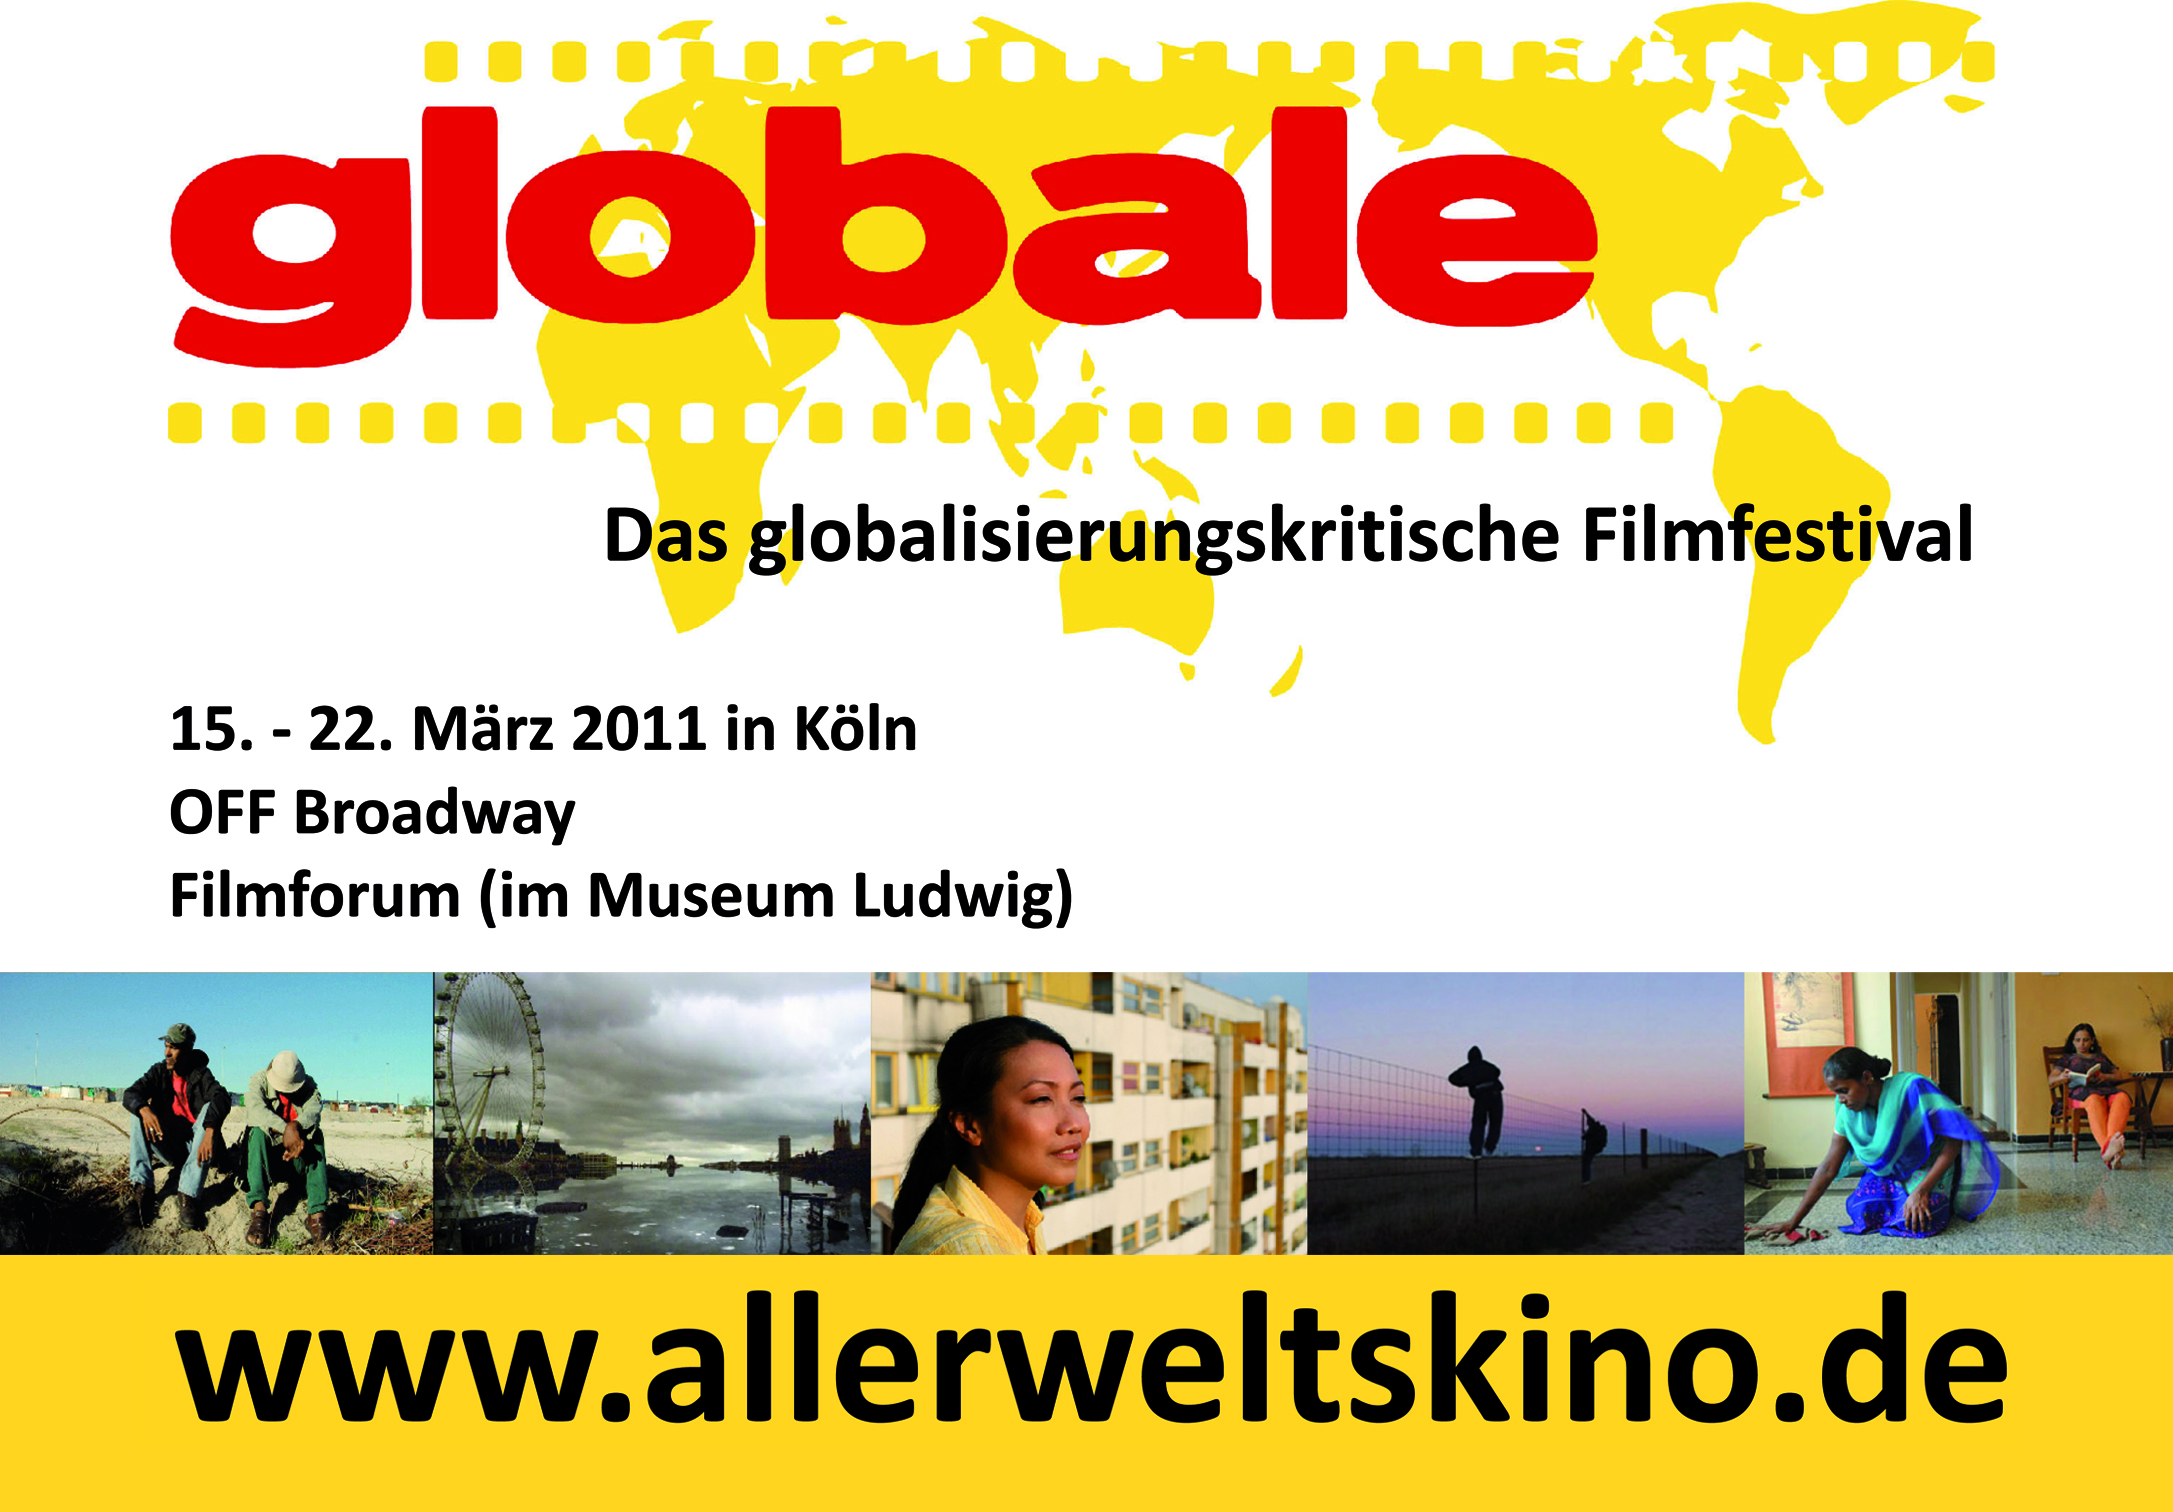 Globale - globalisierungskritisches Filmfestival